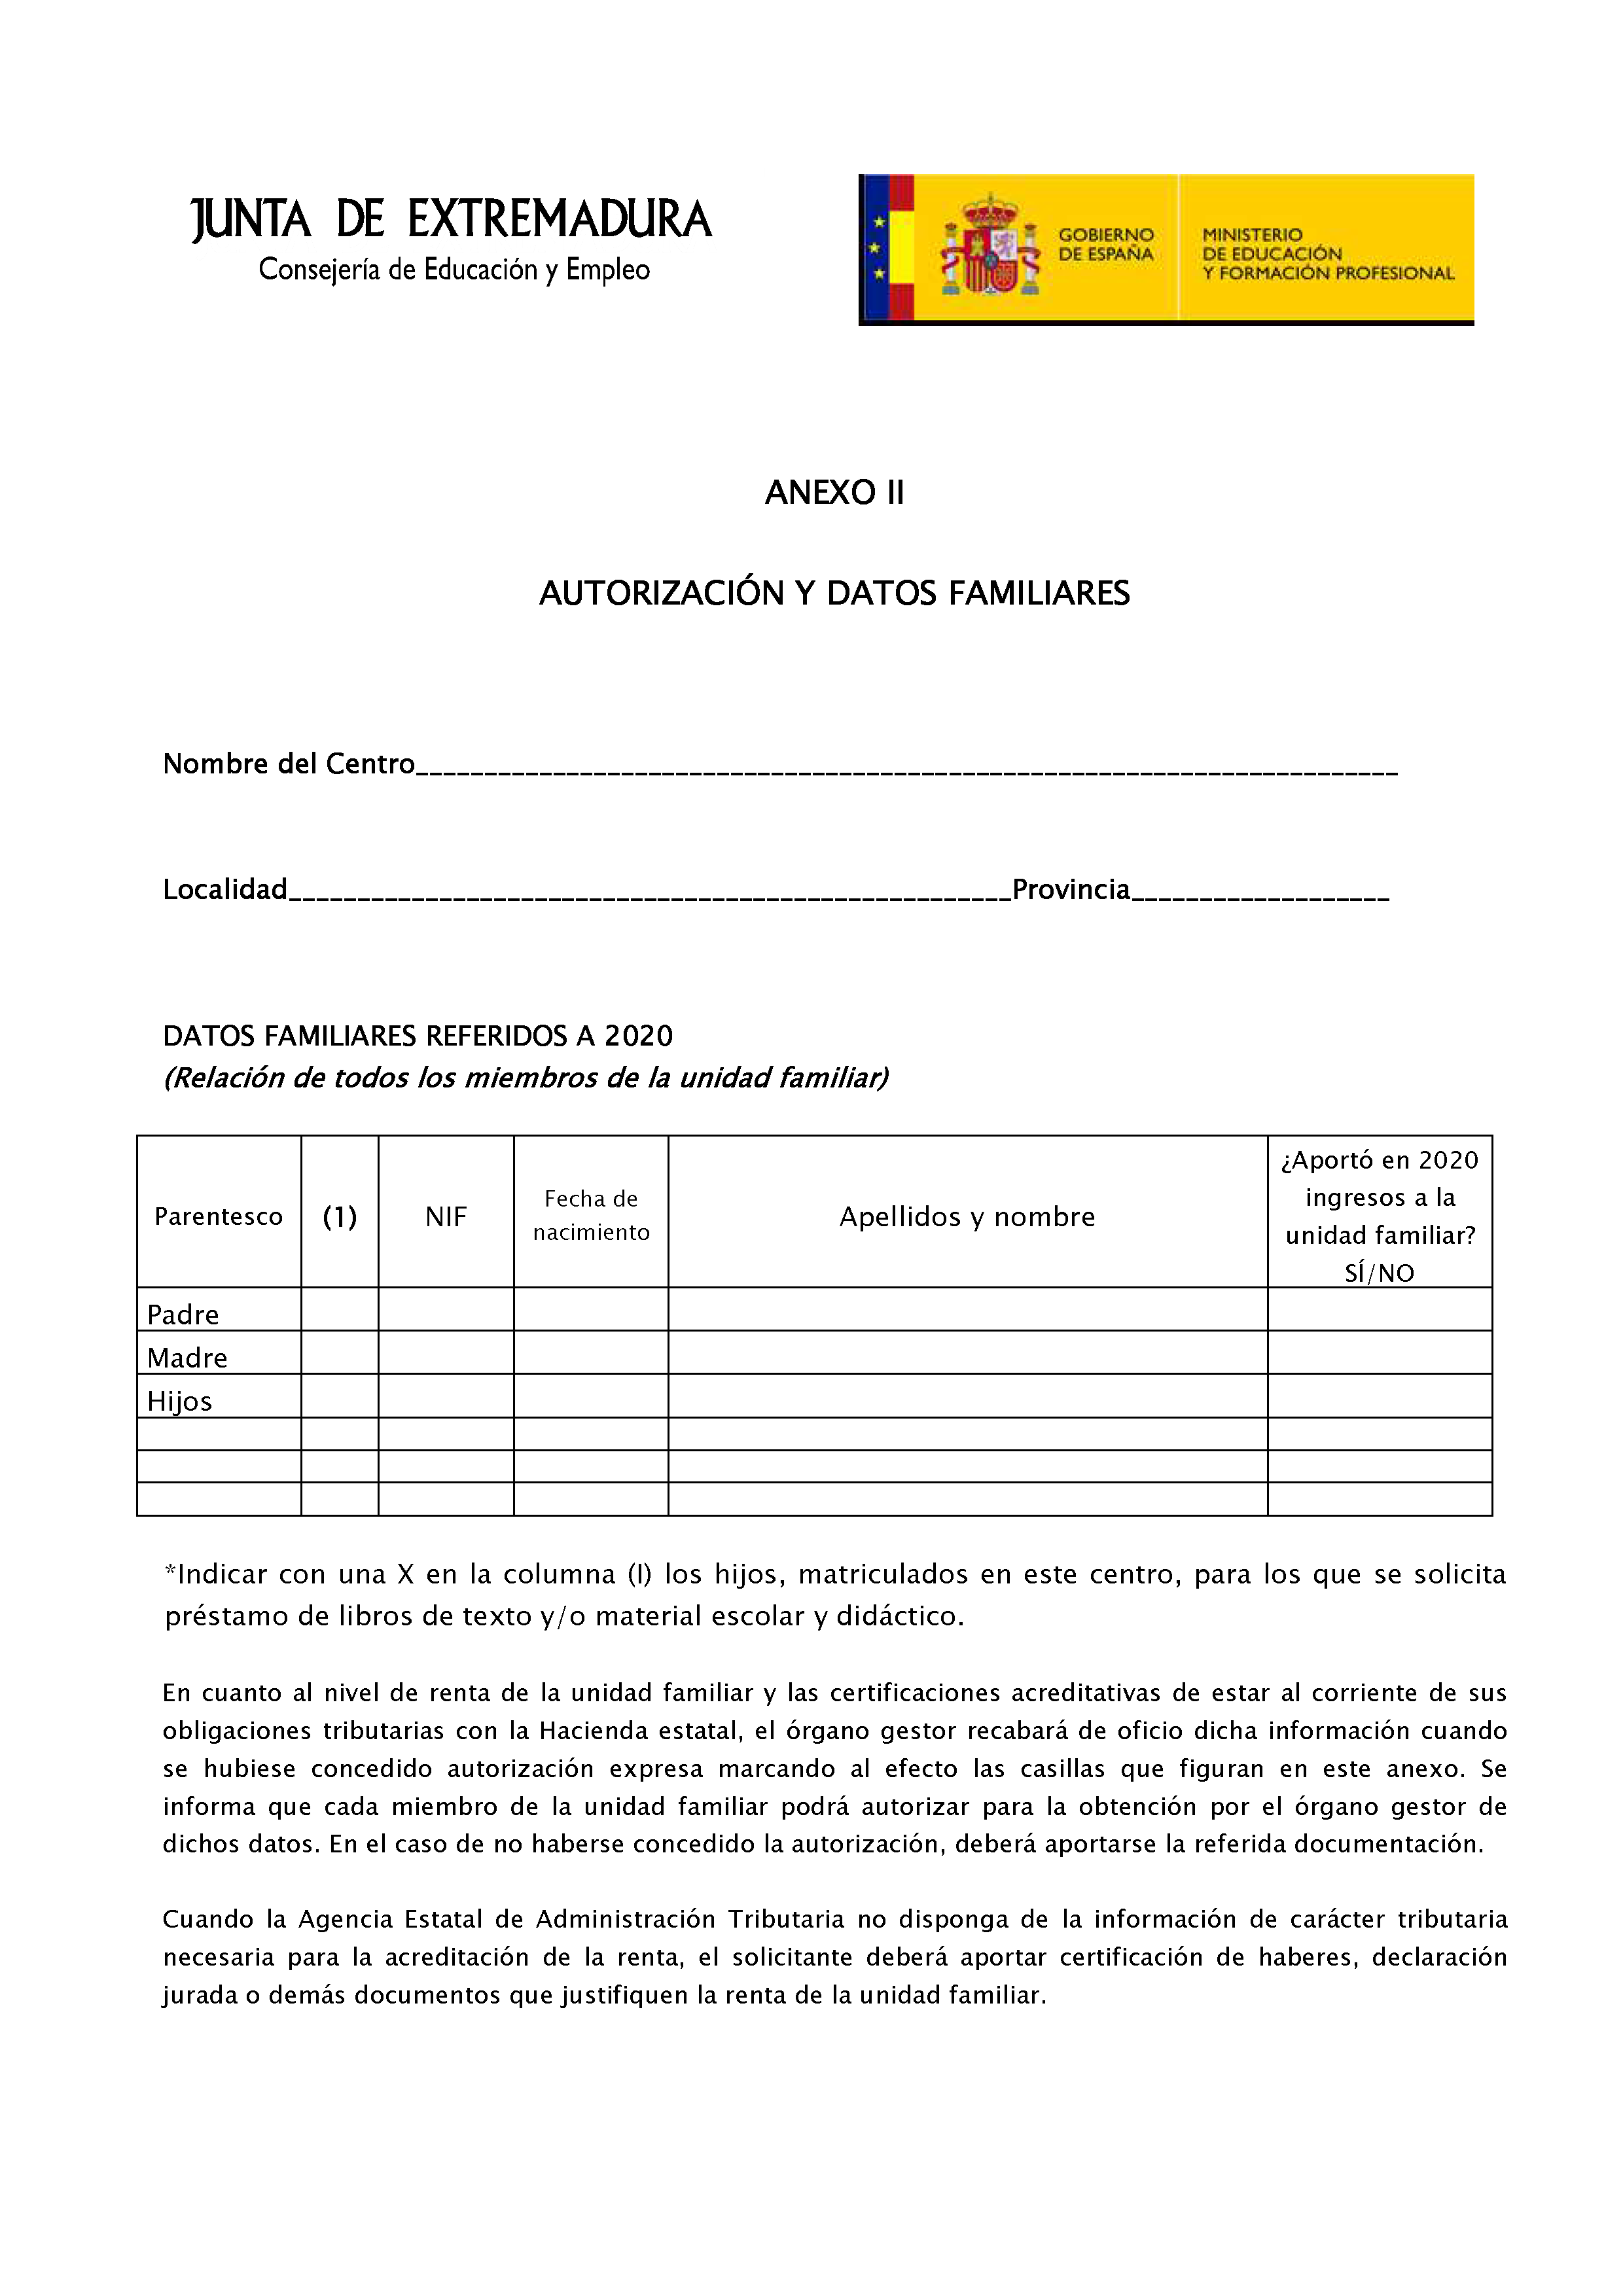 ANEXO II AUTORIZACION Y DATOS FAMILIARES PAG. 2